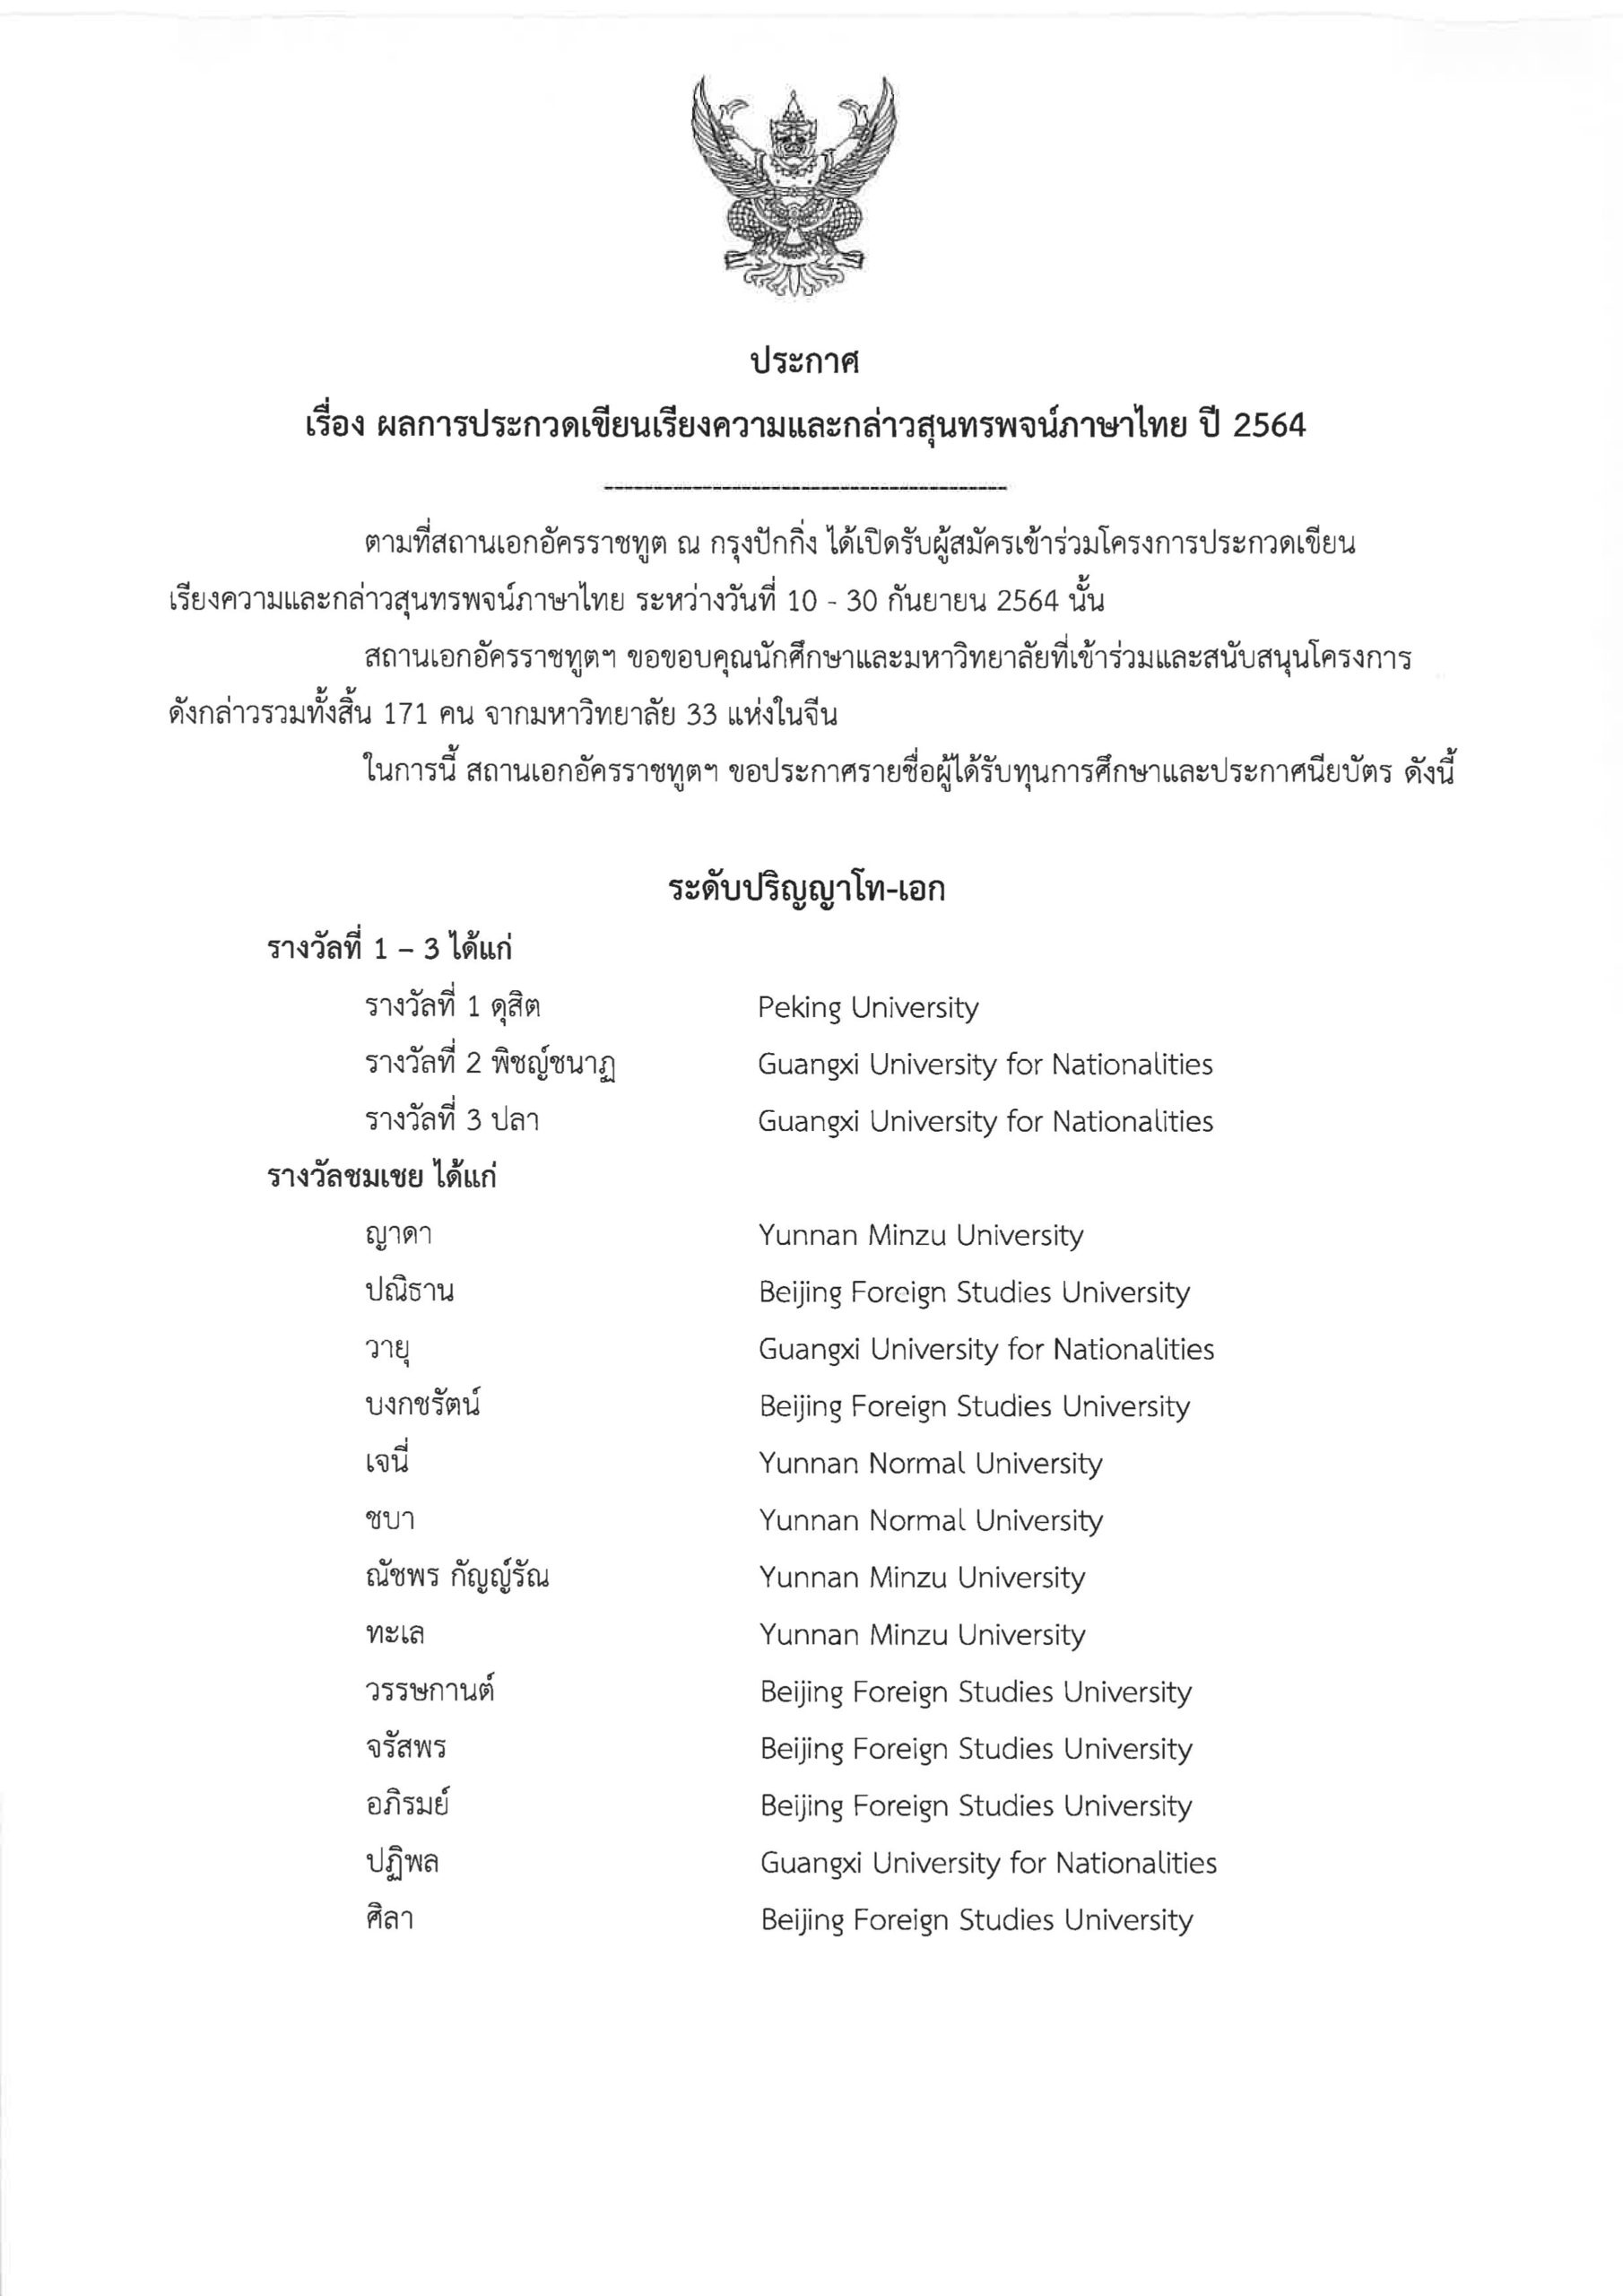 ประกาศ เรื่อง ผลการประกวดเขียนเรียงความและกล่าวสุนทรพจน์ภาษาไทย ปี 2564